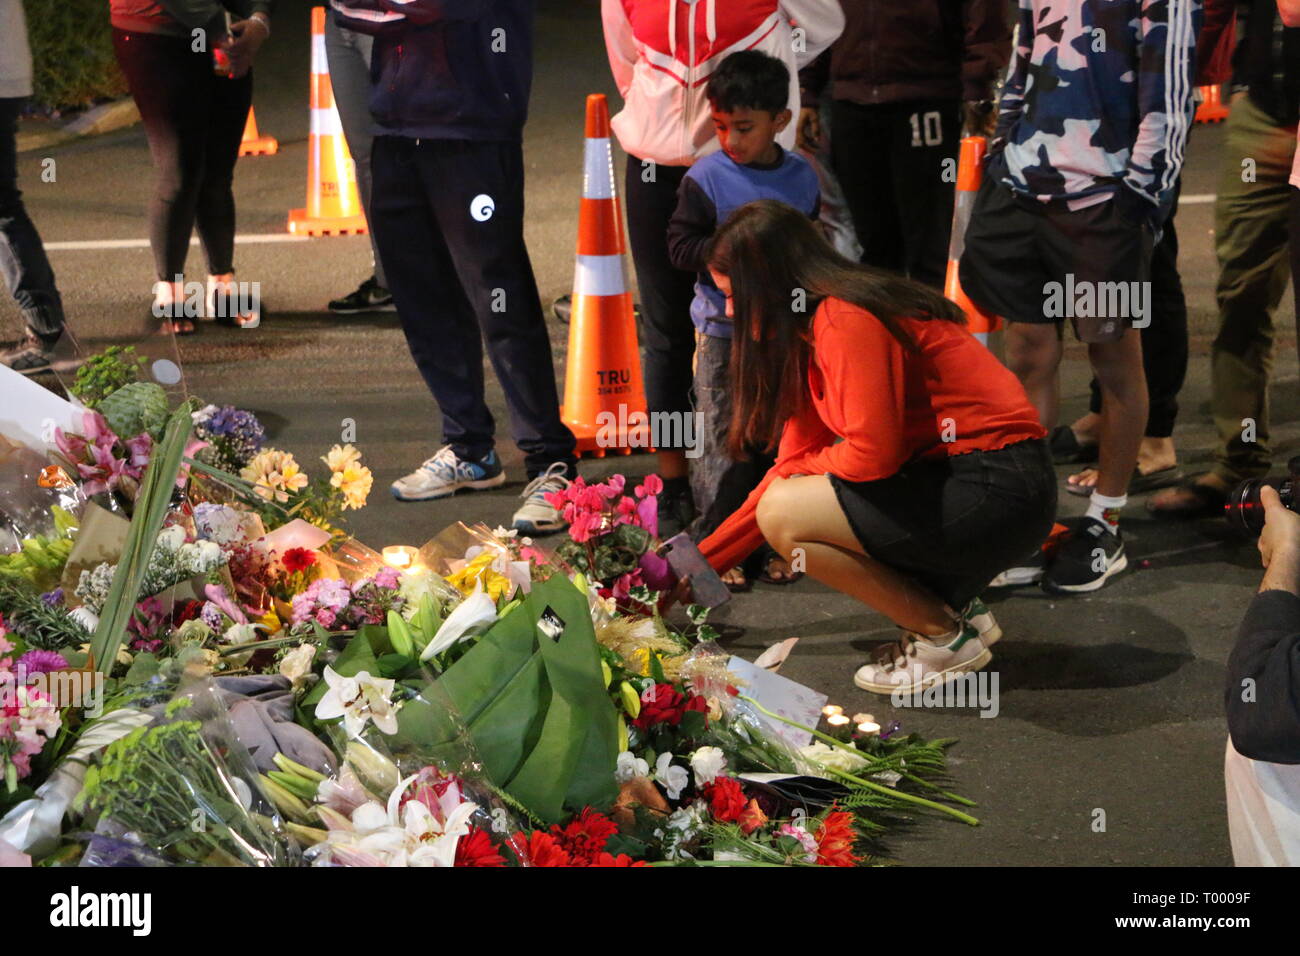 Une jeune fille vu portant des fleurs pour rendre hommage aux victimes de la prise de vue des mosquées de Christchurch. Autour de 49 personnes a été auraient été tués dans l'attaque terroriste des mosquées de Christchurch ciblant la prise de la mosquée Al Noor Mosquée et la mosquée de Linwood. Banque D'Images